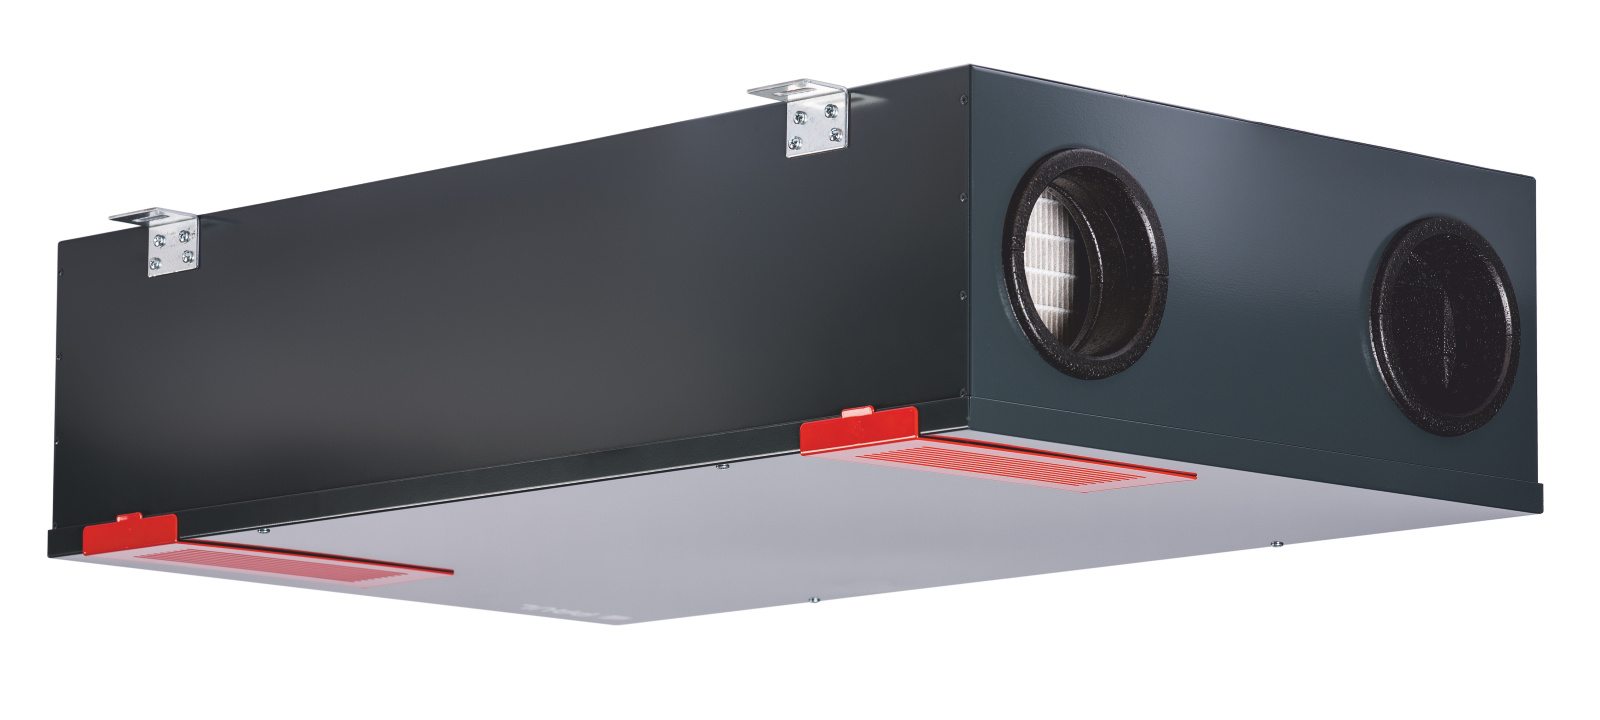 Filtri dell'aria M5 / F7 vhbw set di filtri compatibile con Paul Climos 200 sistema di ventilazione bianco 4 pezzi 17 x 17 x 9 cm 